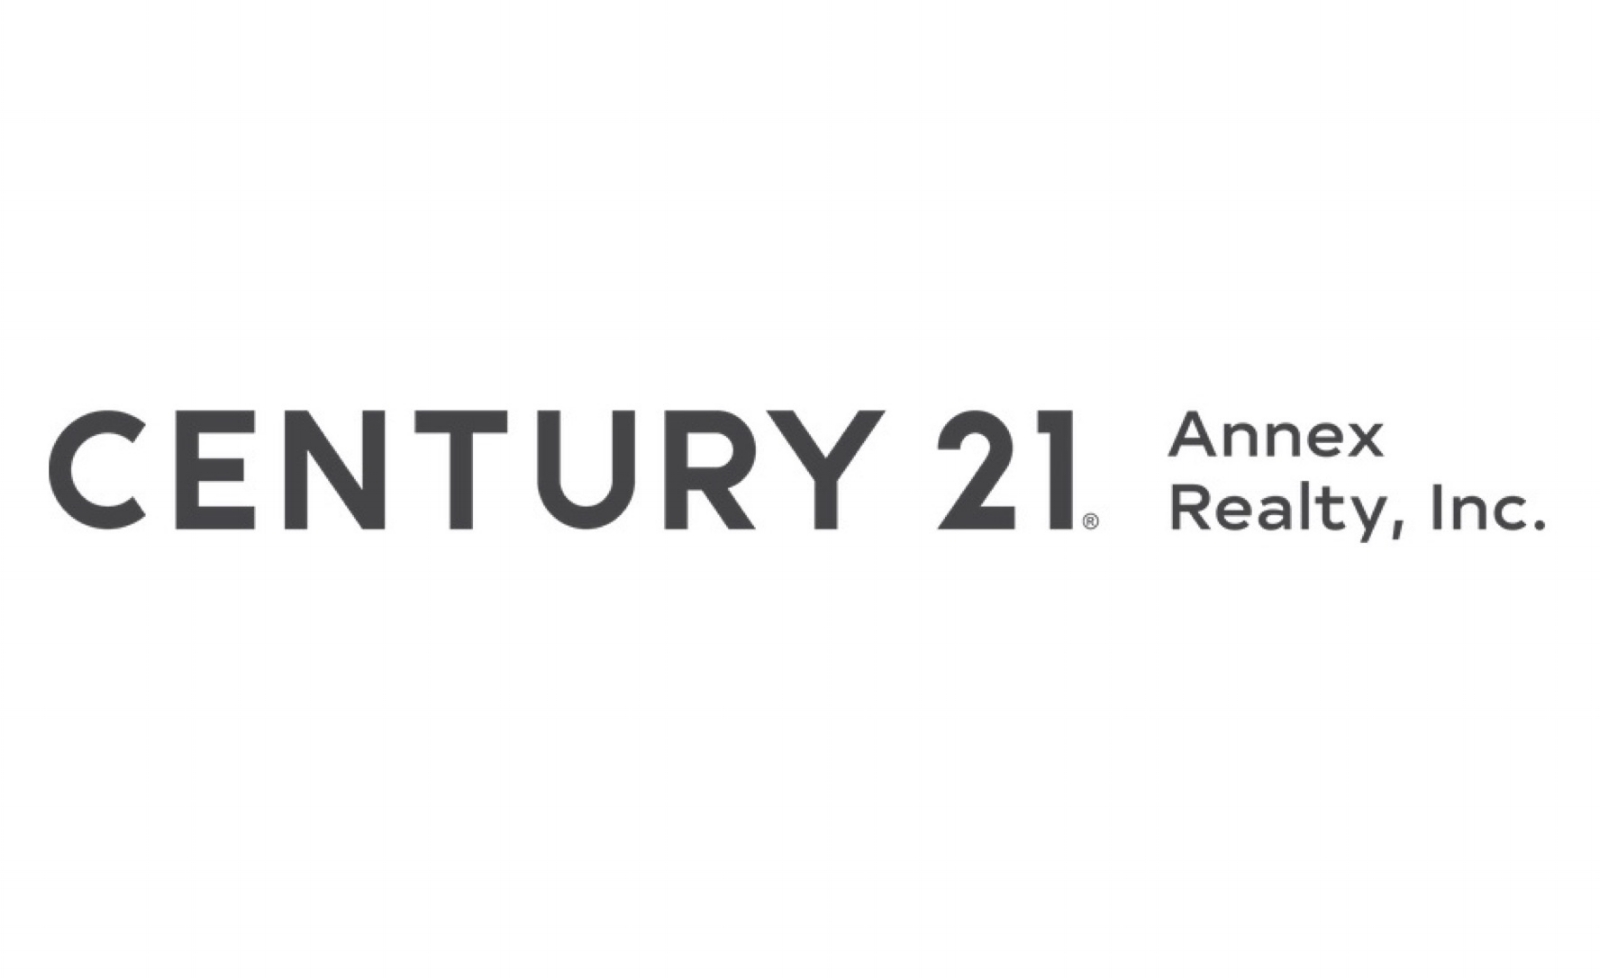 Century 21 Annex